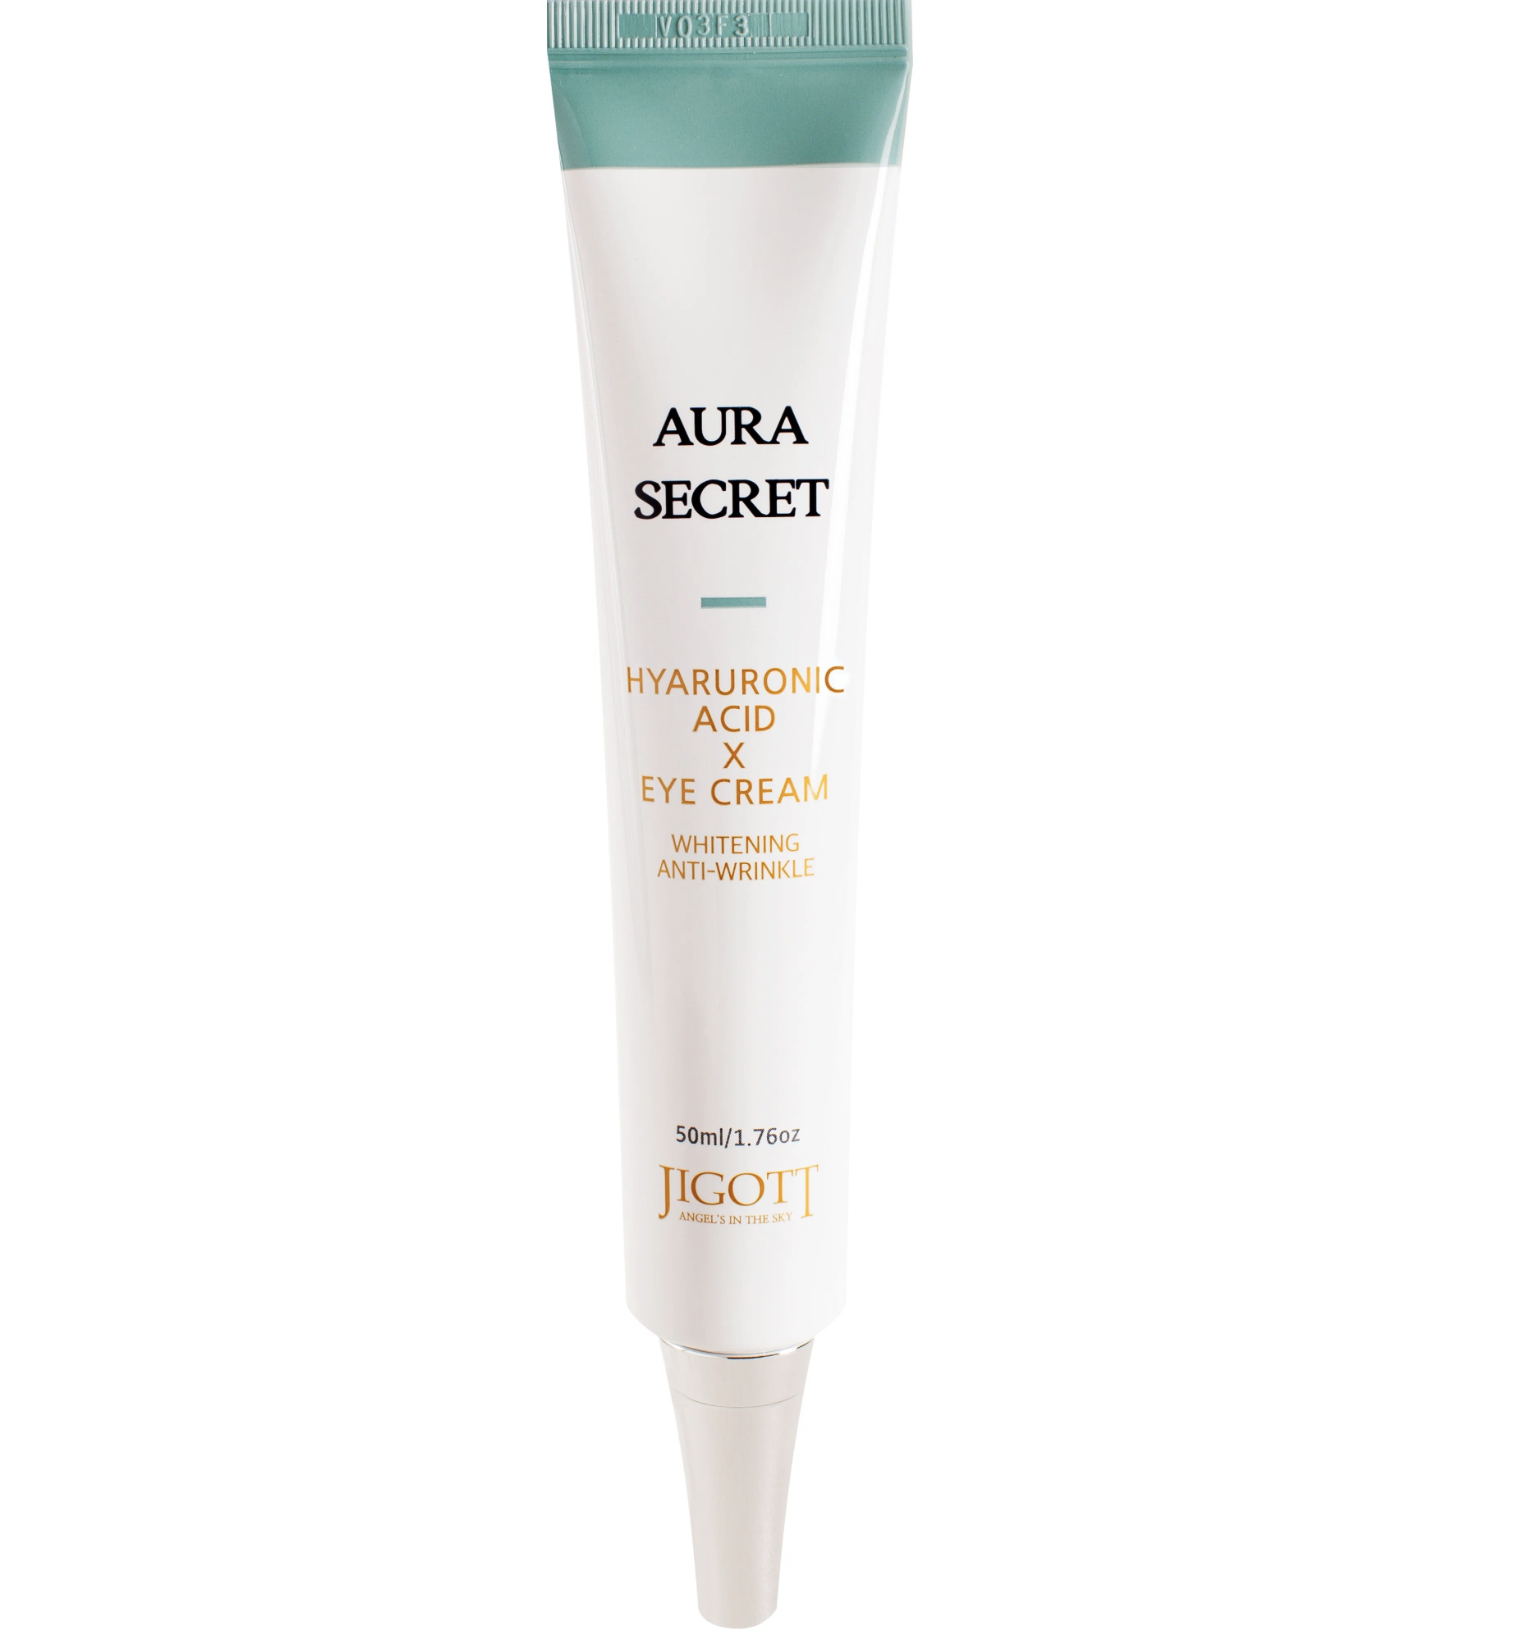   / Jigott -      Aura Secret Hyaluronic Acid Eye Cream 50 